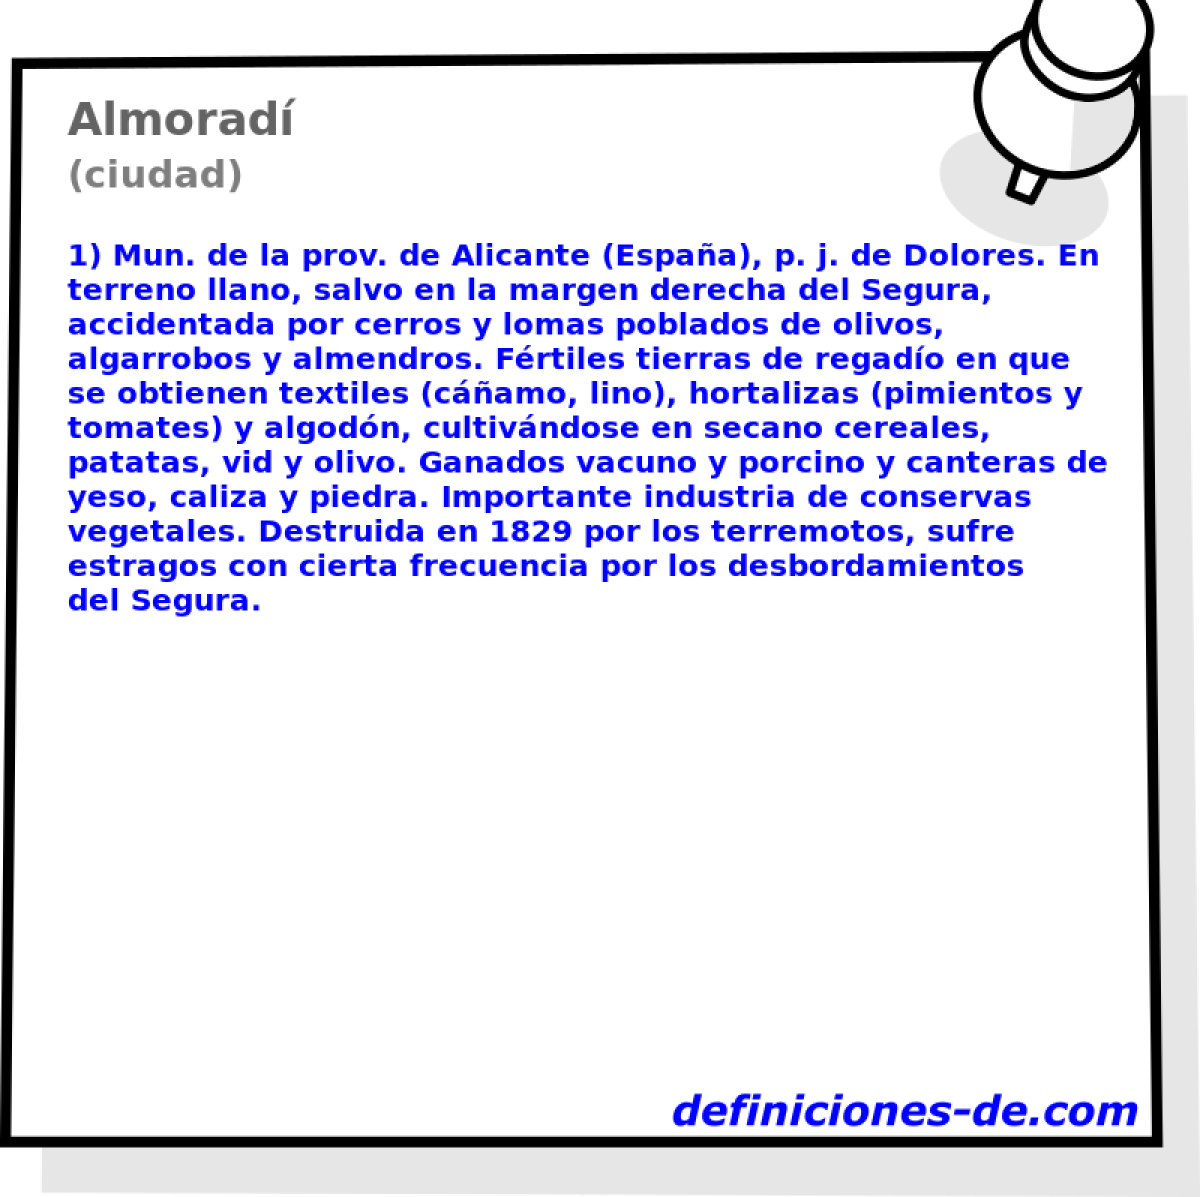 Almorad (ciudad)